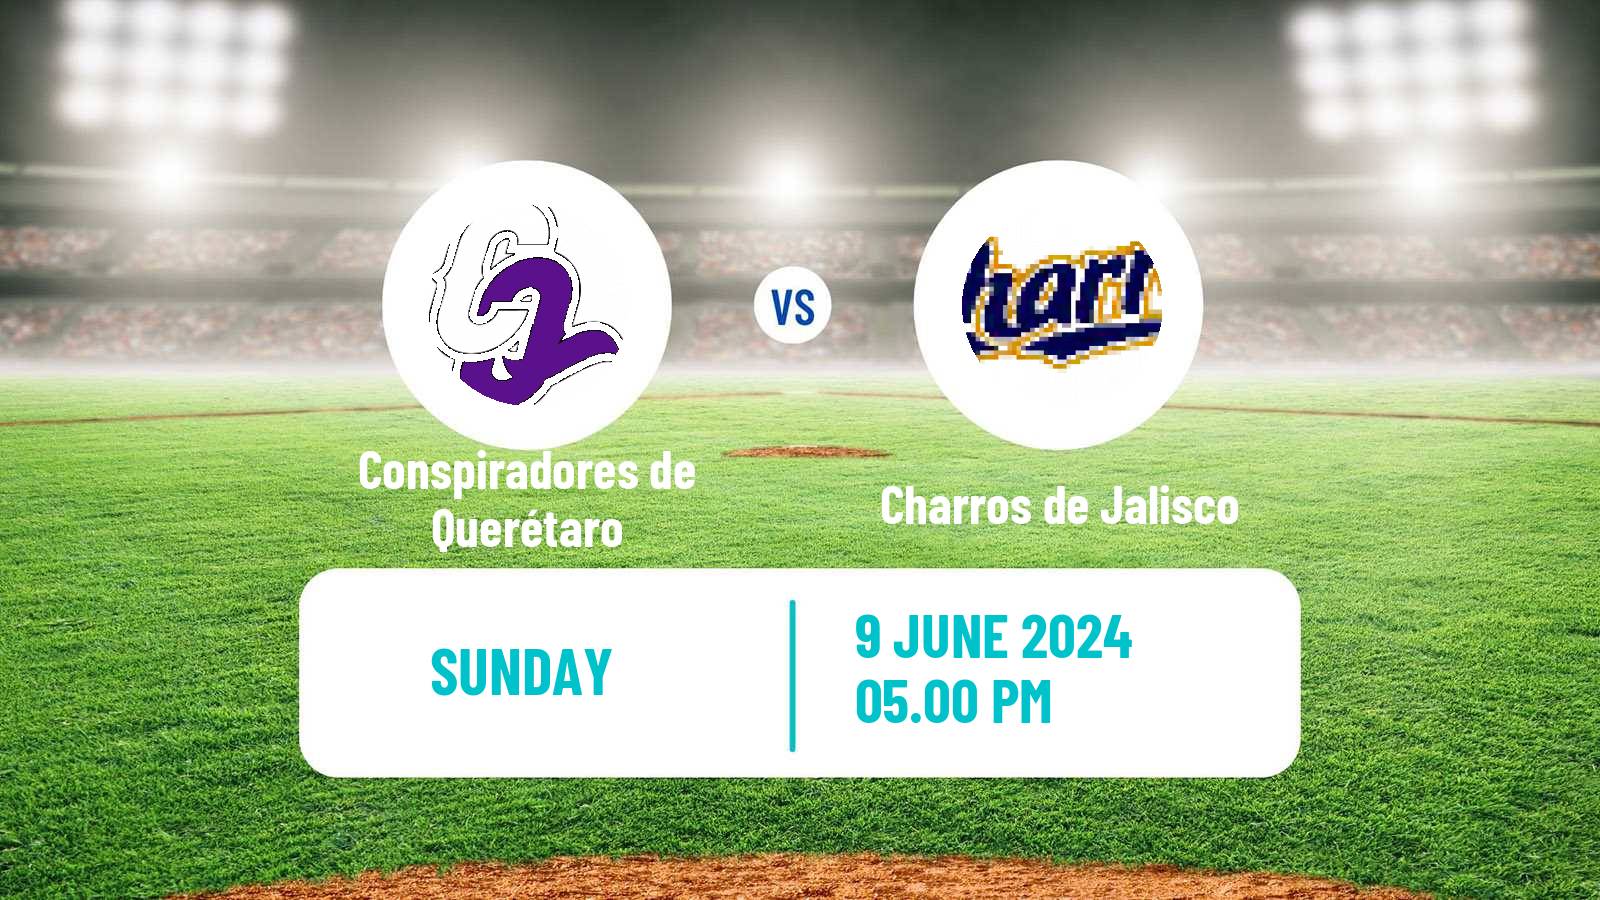 Baseball LMB Conspiradores de Querétaro - Charros de Jalisco